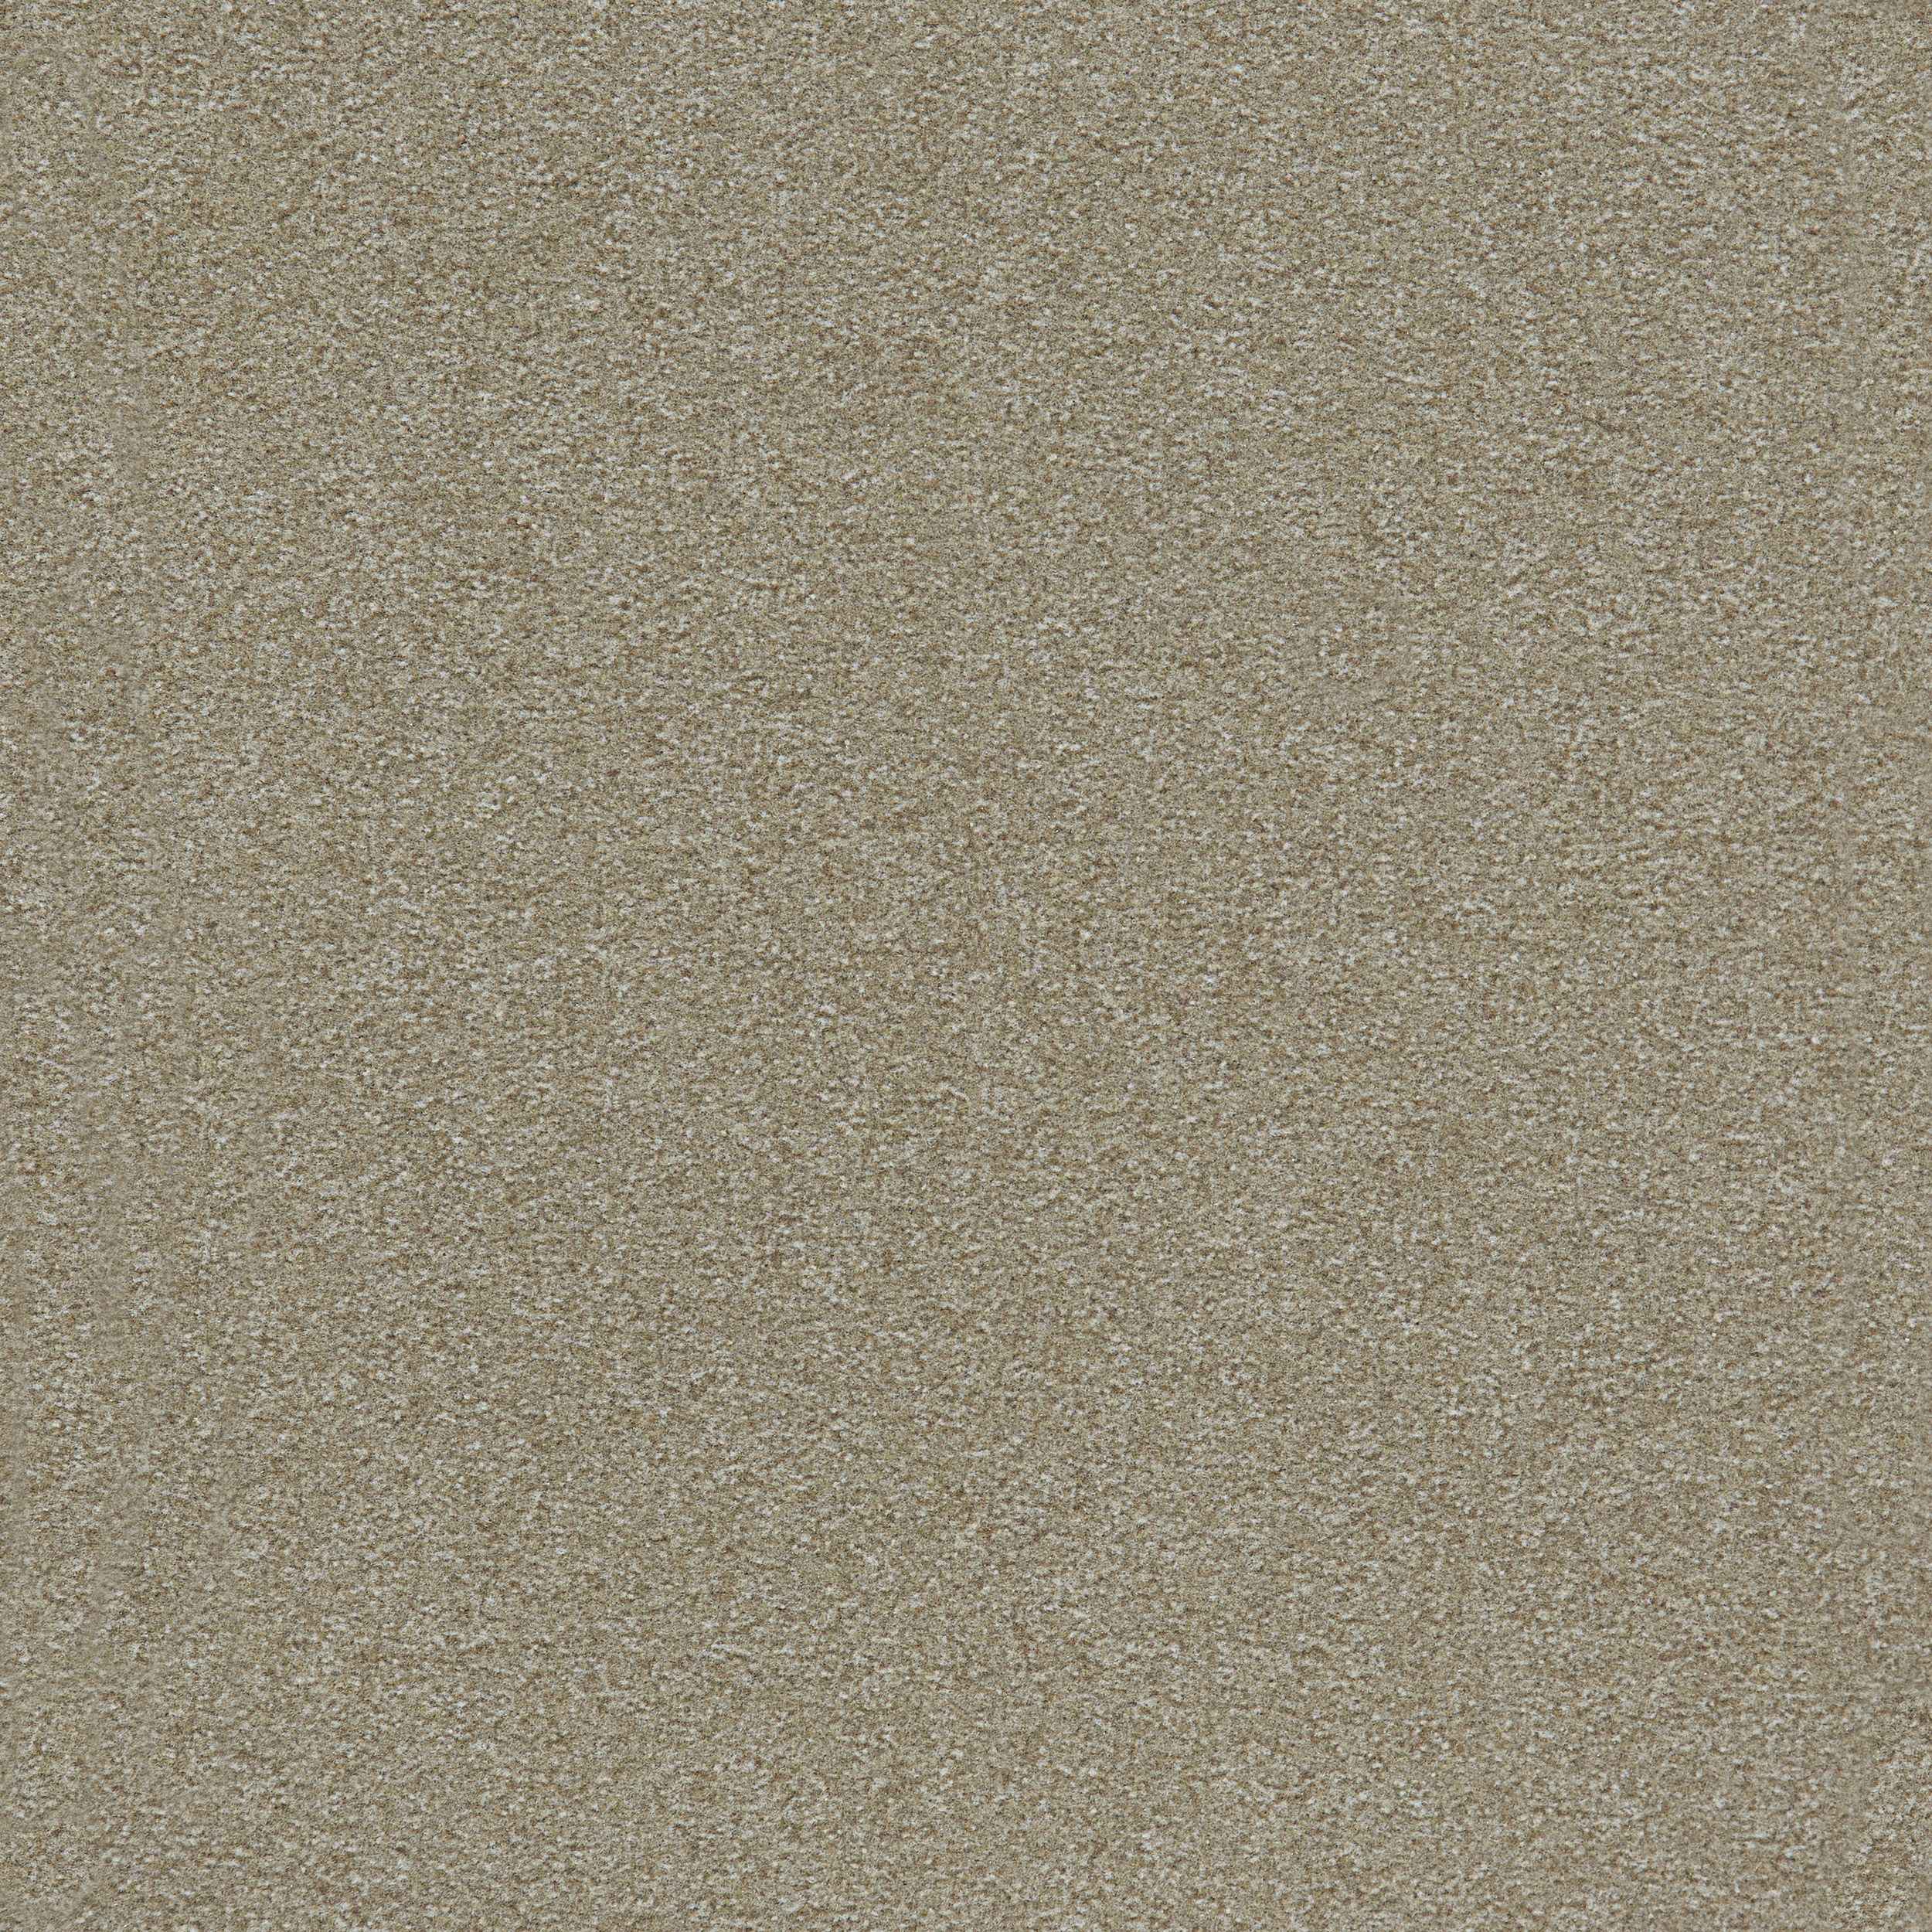 Heuga 725 Carpet Tile In Oyster Bildnummer 6